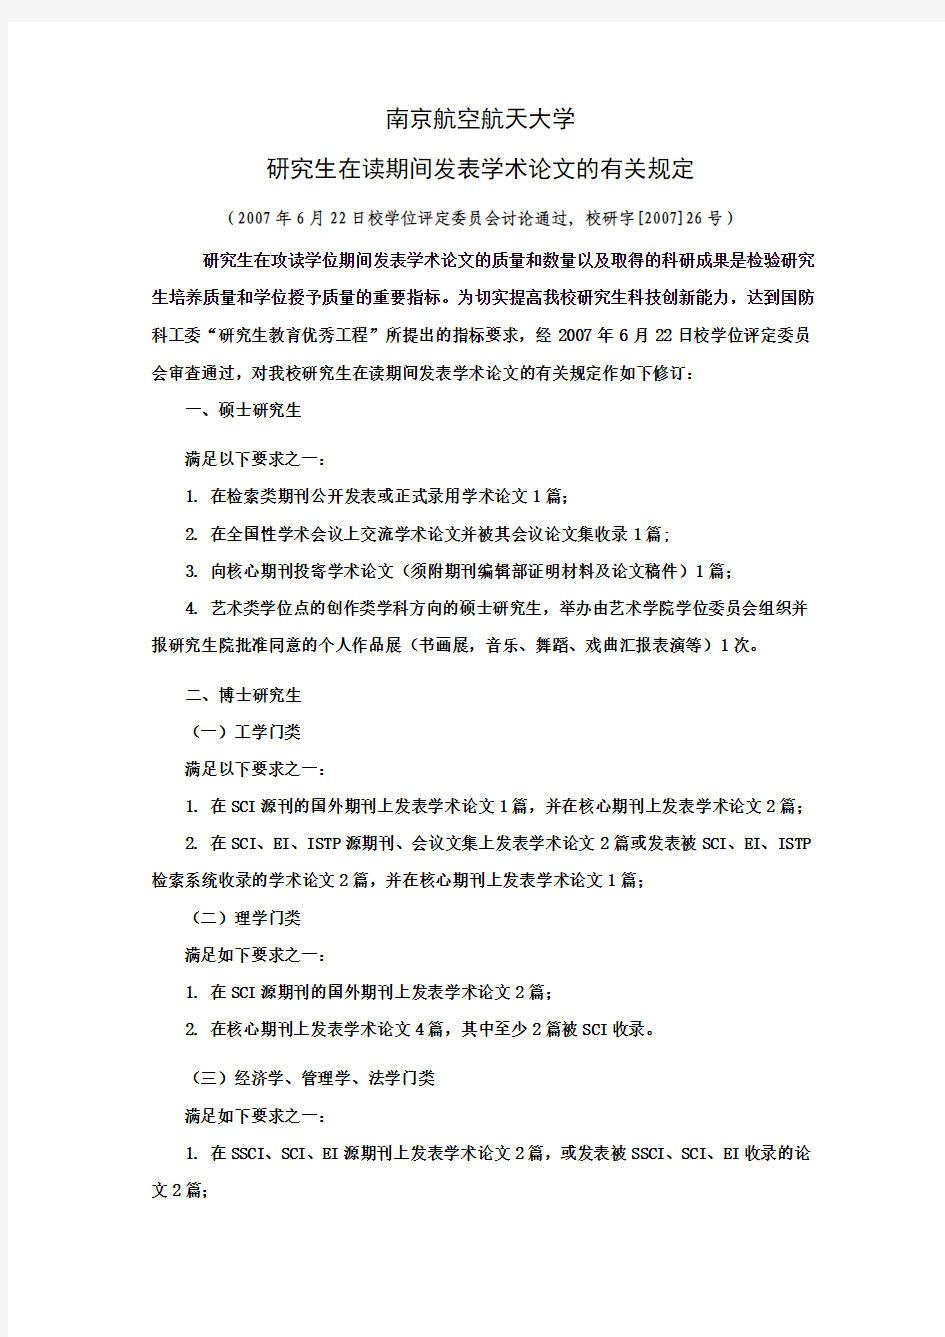 南京航空航天大学研究生在读期间发表学术论文的有关规定